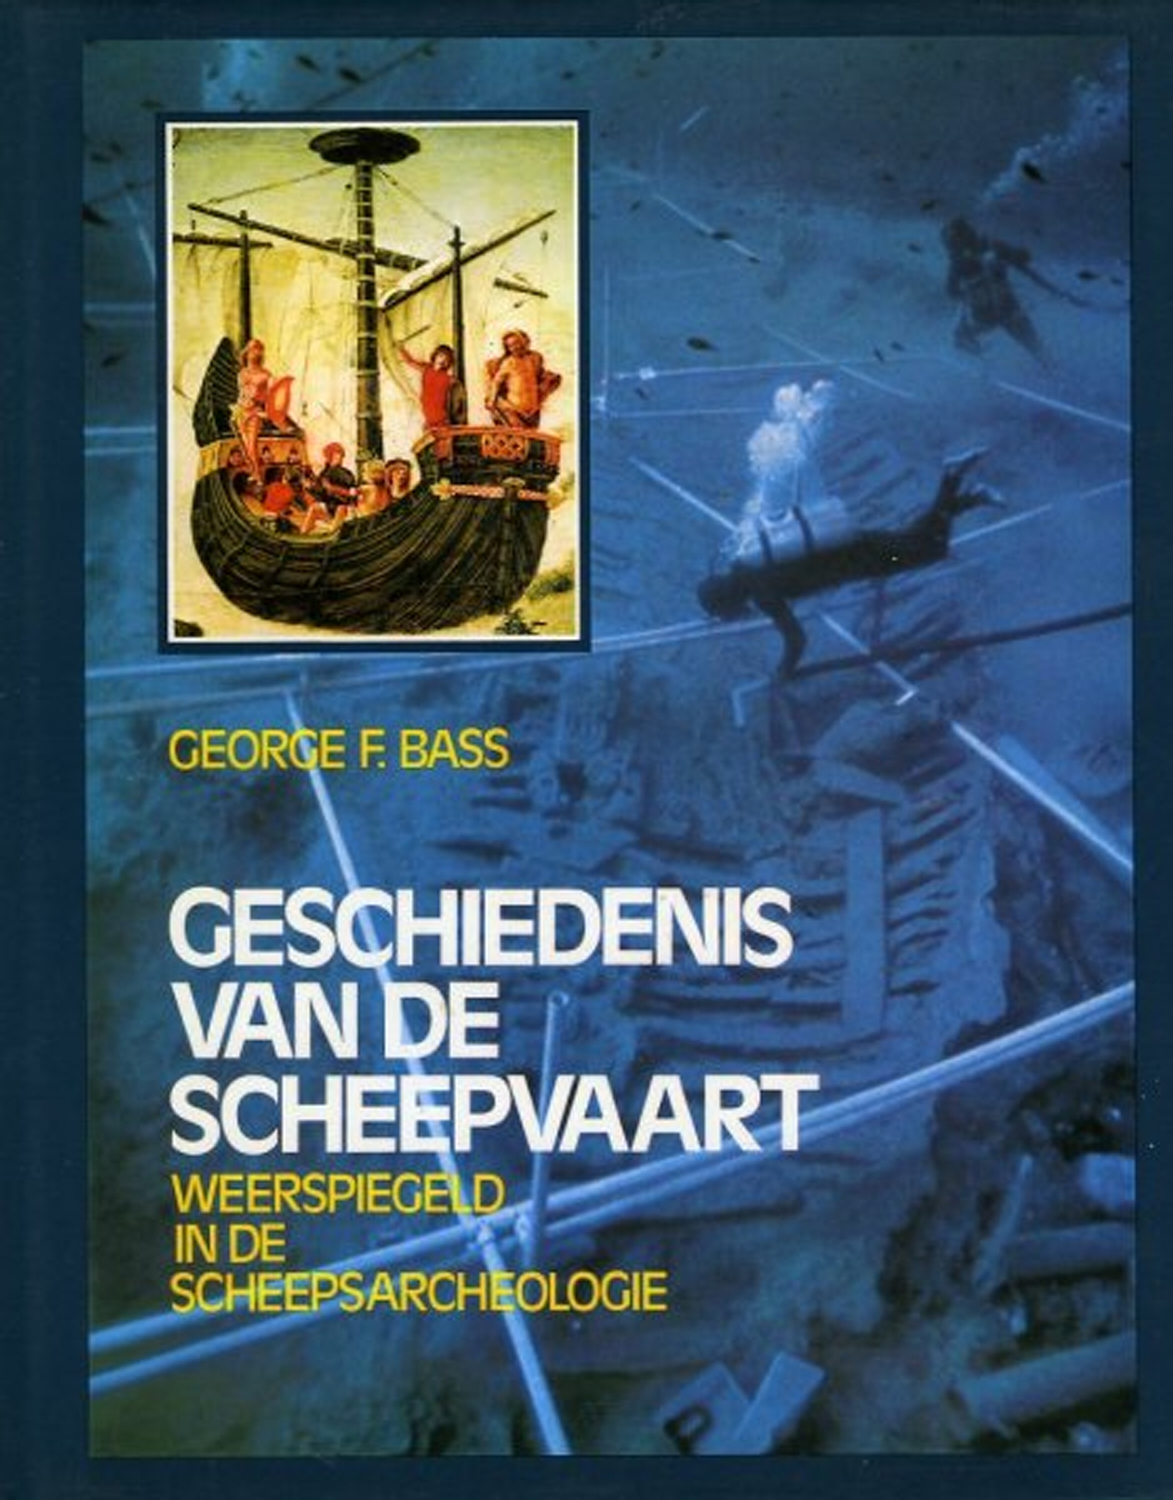 Geschiedenis van de Scheepvaart. Weerspiegeld in de scheepsarcheologie. Met 505 illustraties waarvan 150 in kleur. - BASS, George F.